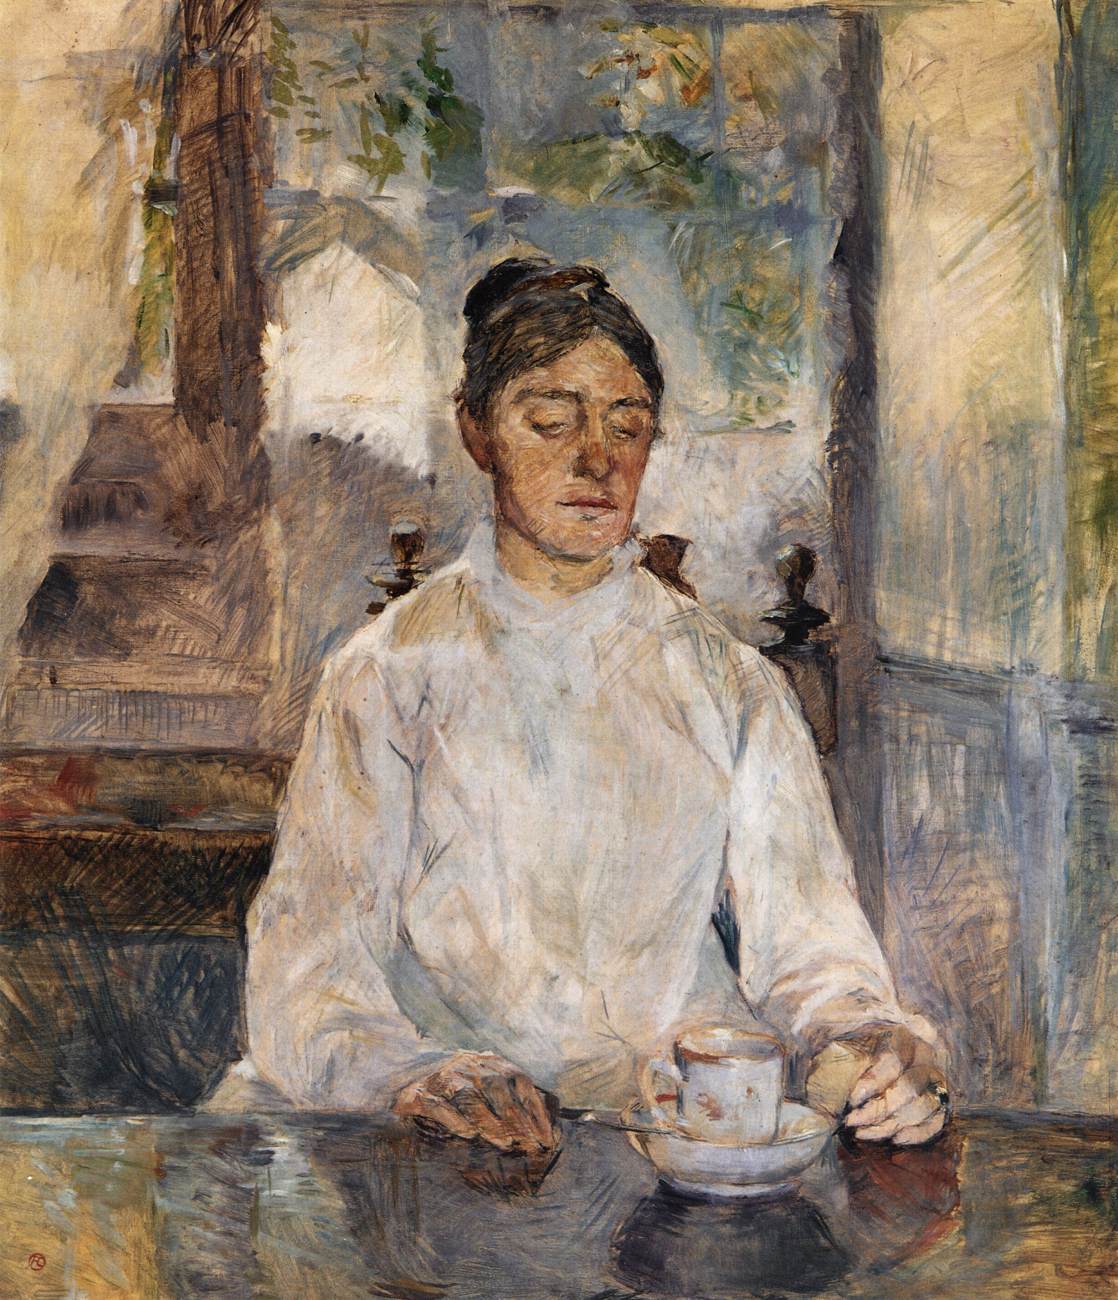 הרוזנת אדלה דה טולוז-לוטארק, אמו של האמן בארוחת הבוקר במלומה שאטו